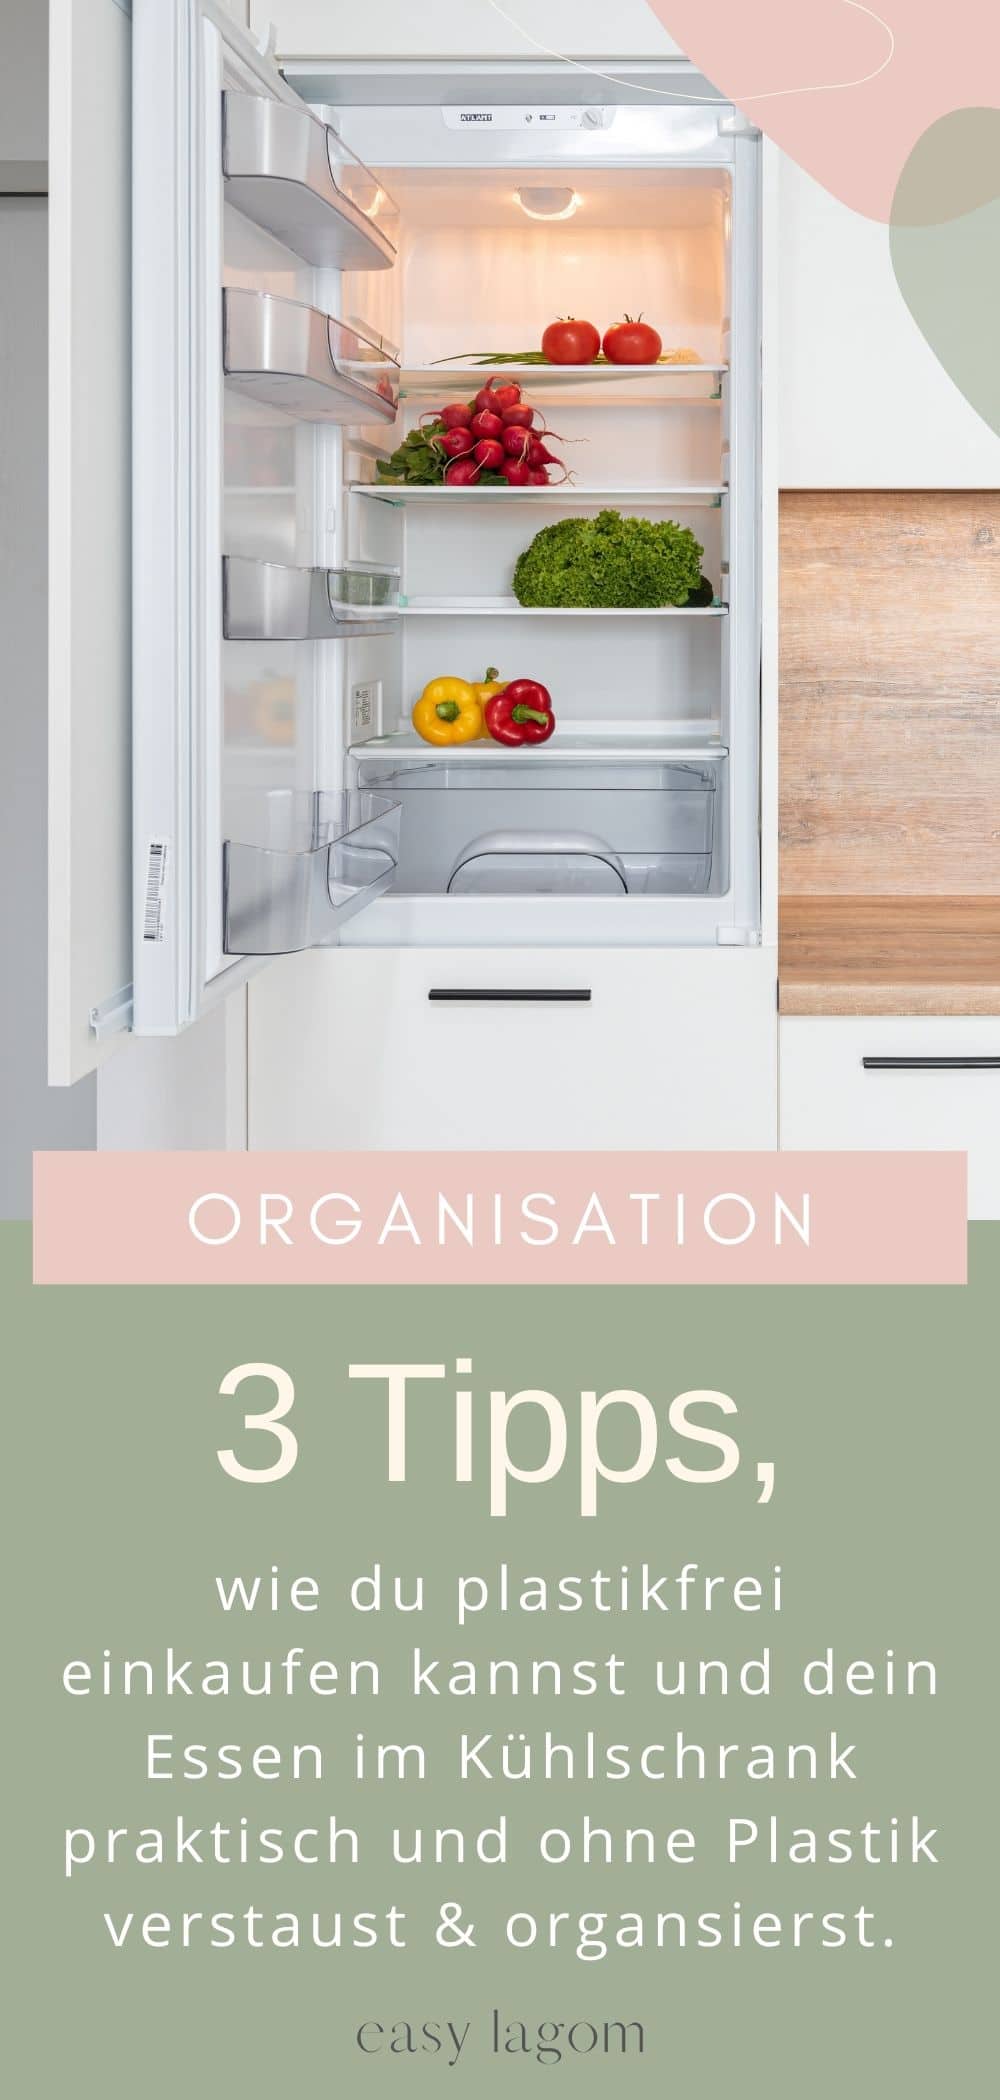 3 Tipps, wie du plastikfrei einkaufen kannst und dein Essen im Kühlschrank praktisch und ohne Plastik verstaust organisierst